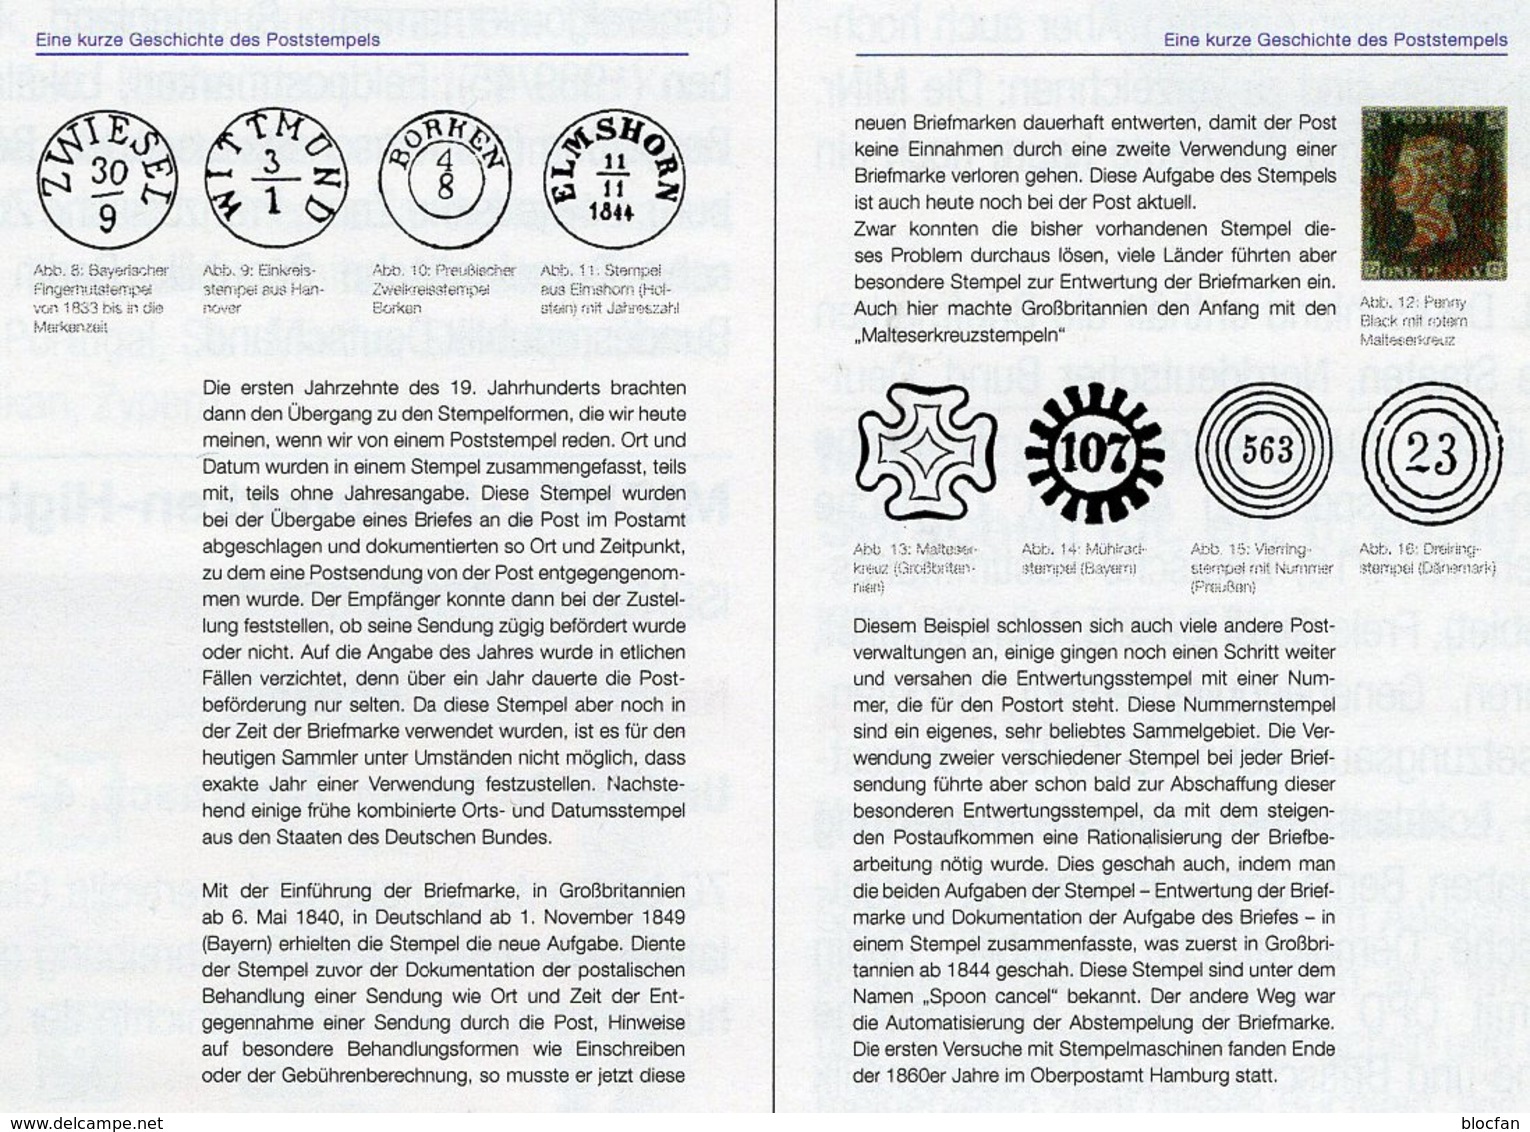 MICHEL Stempel Verstehen Ratgeber 2020 Neu 50€ Briefmarken Stempelarten Wert Bestimmen Stamps ISBN978 3 95402 252 6 - Ed. Speciali